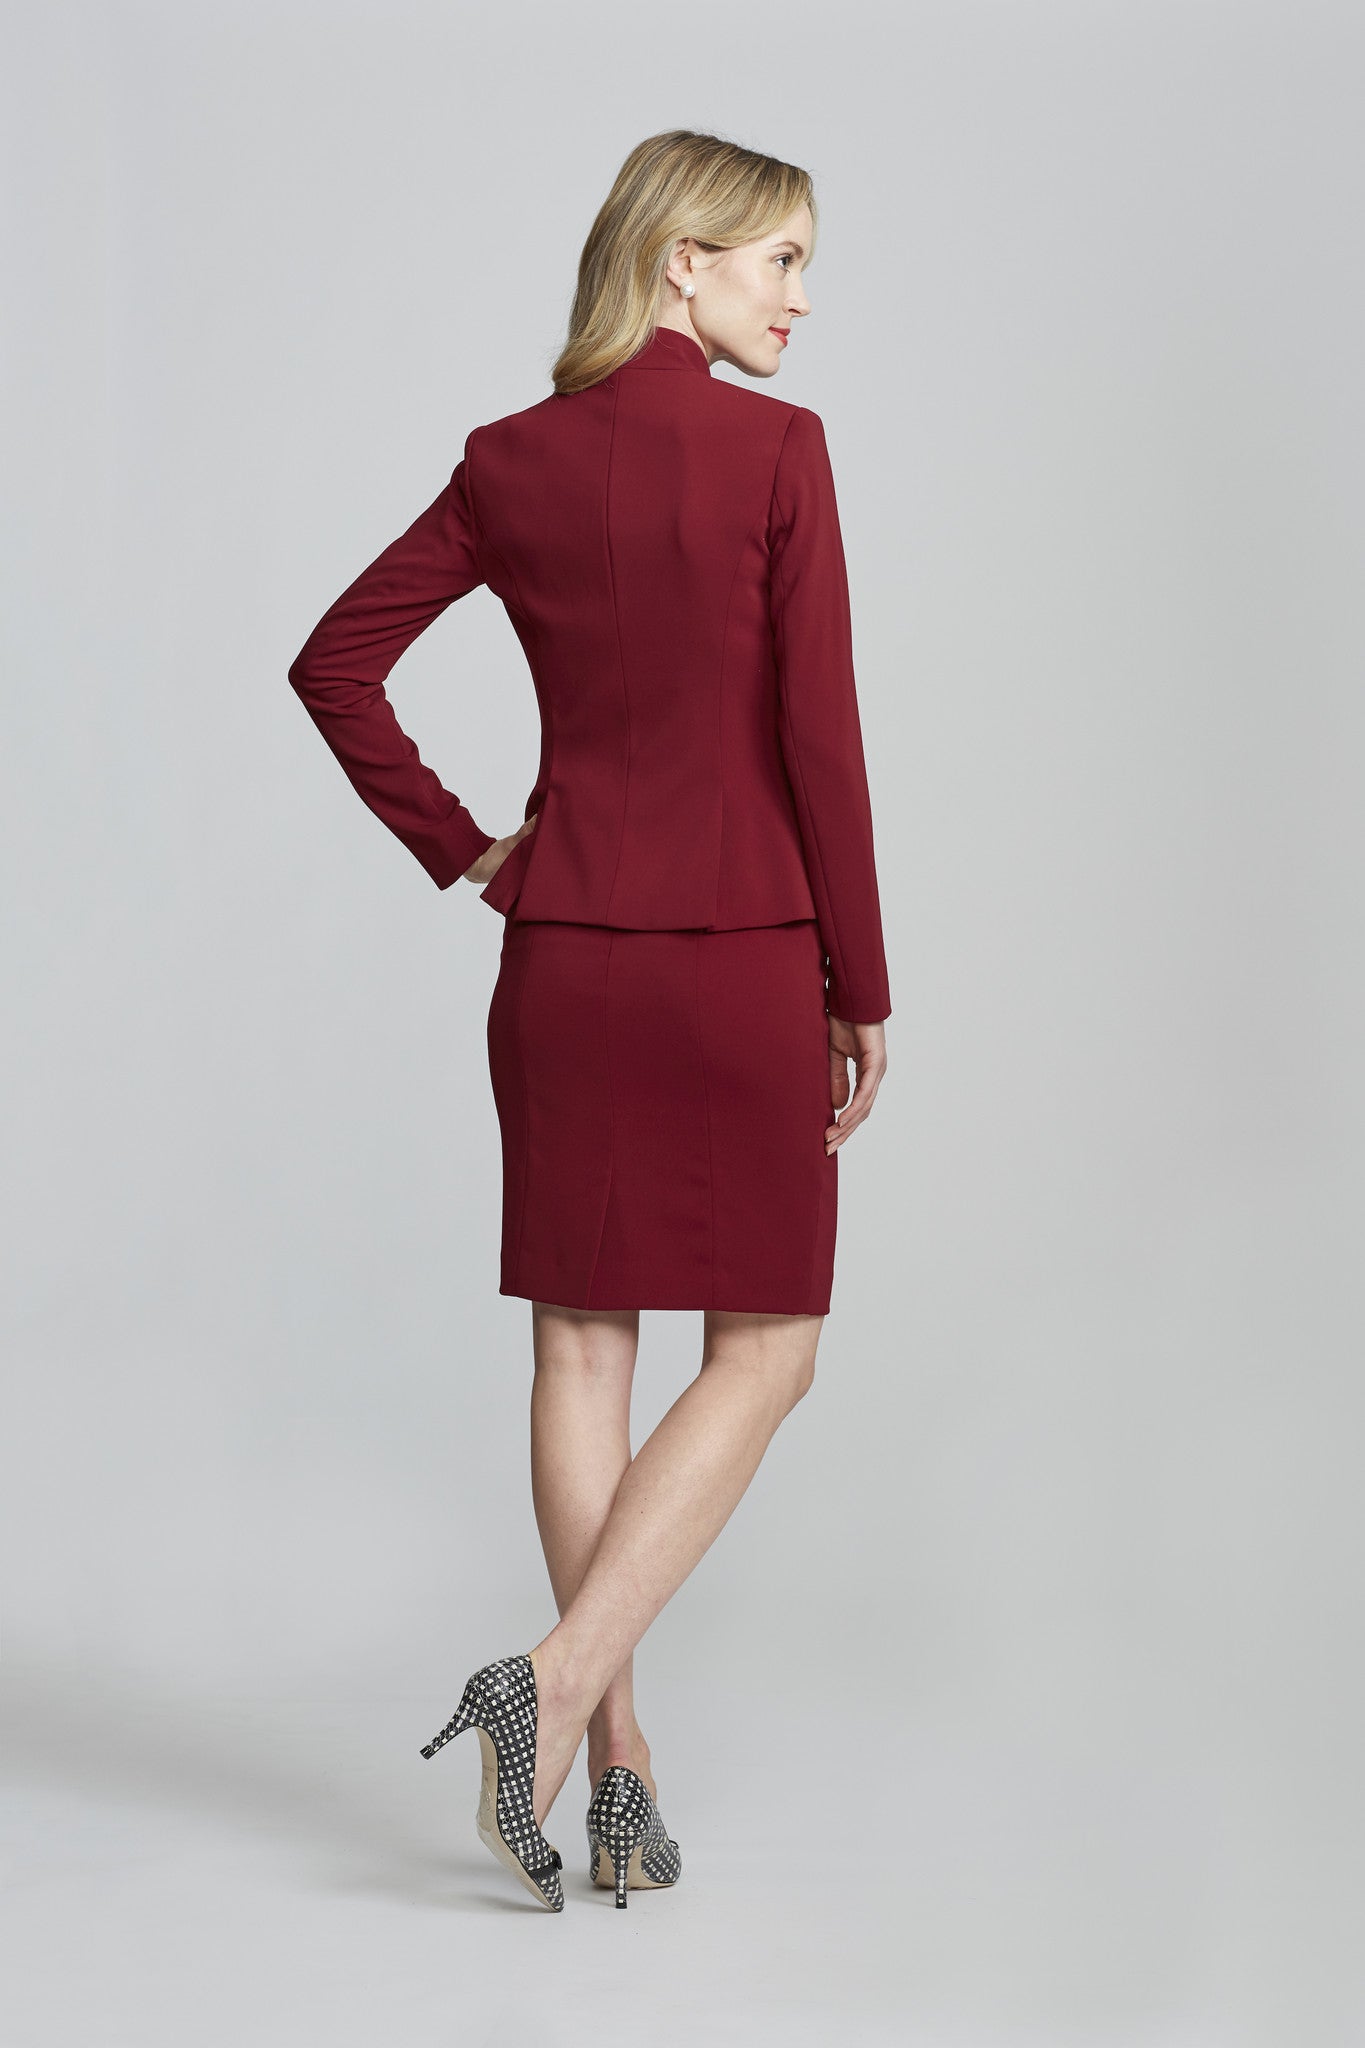 Women's Workwear – Nora Gardner Chelsea Skirt in Burgundy (back)